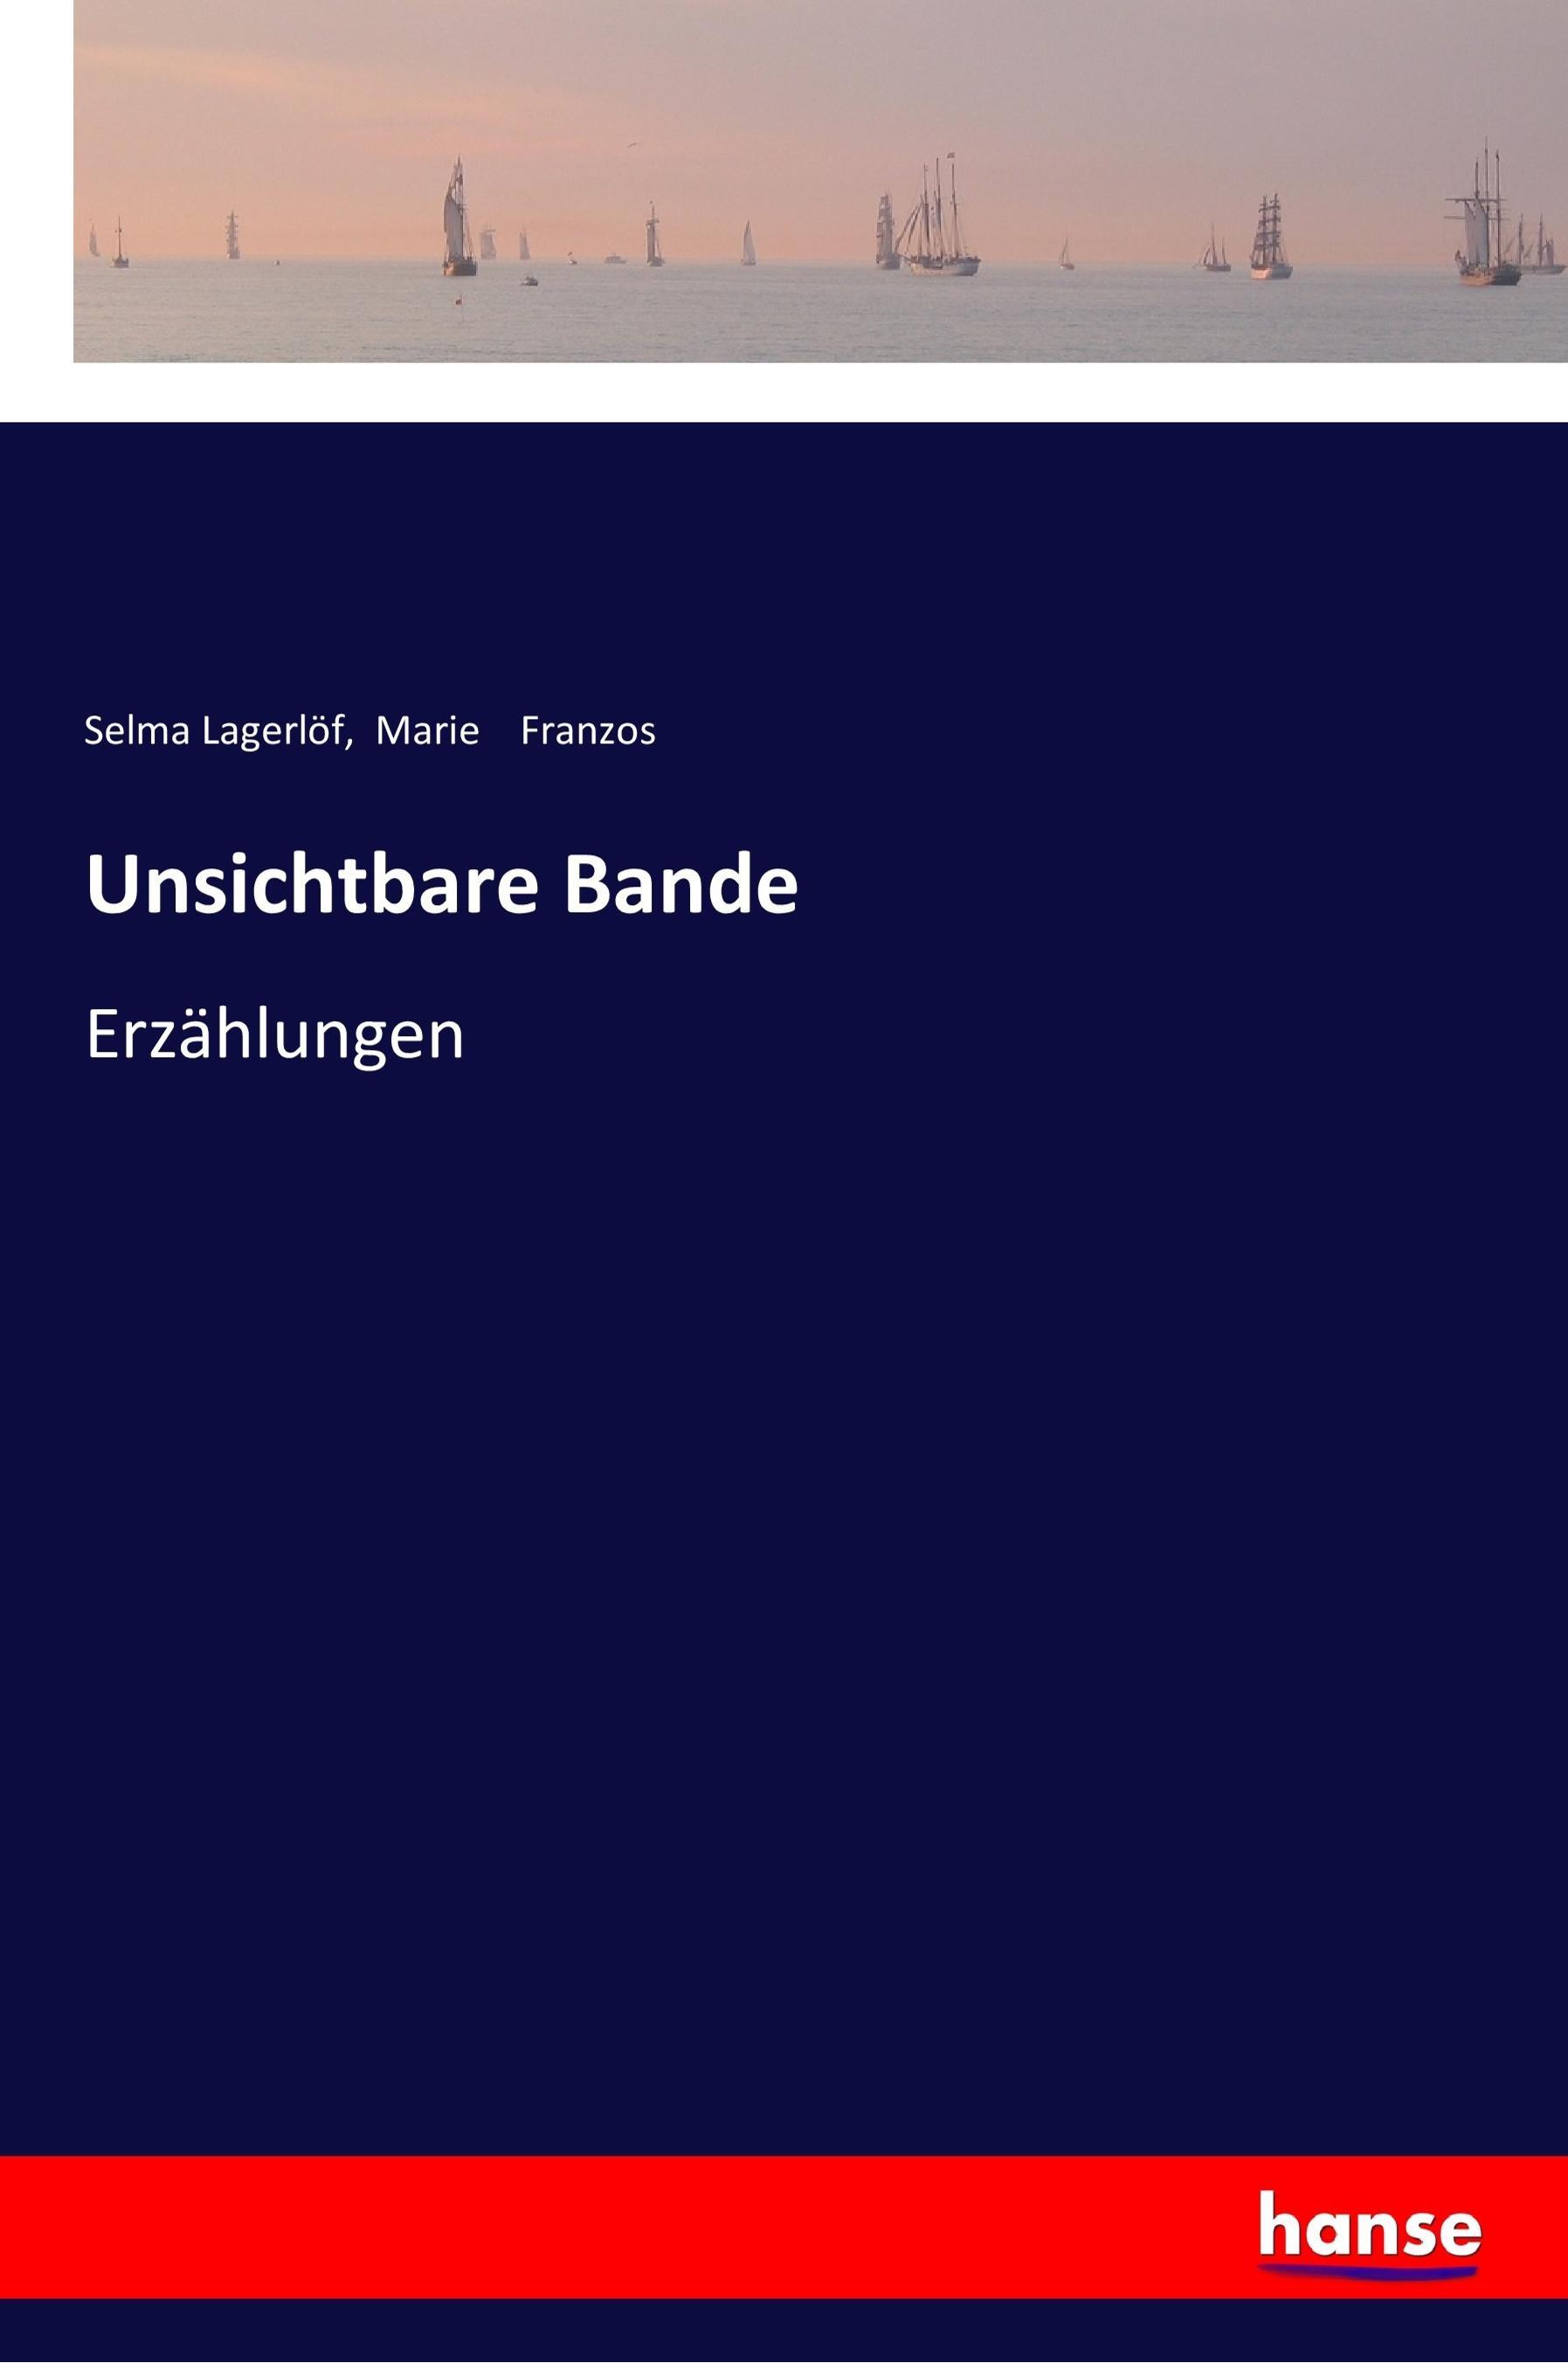 Unsichtbare Bande / Erzählungen / Selma Lagerlöf (u. a.) / Taschenbuch / Paperback / 340 S. / Deutsch / 2017 / hansebooks / EAN 9783337354107 - Lagerlöf, Selma